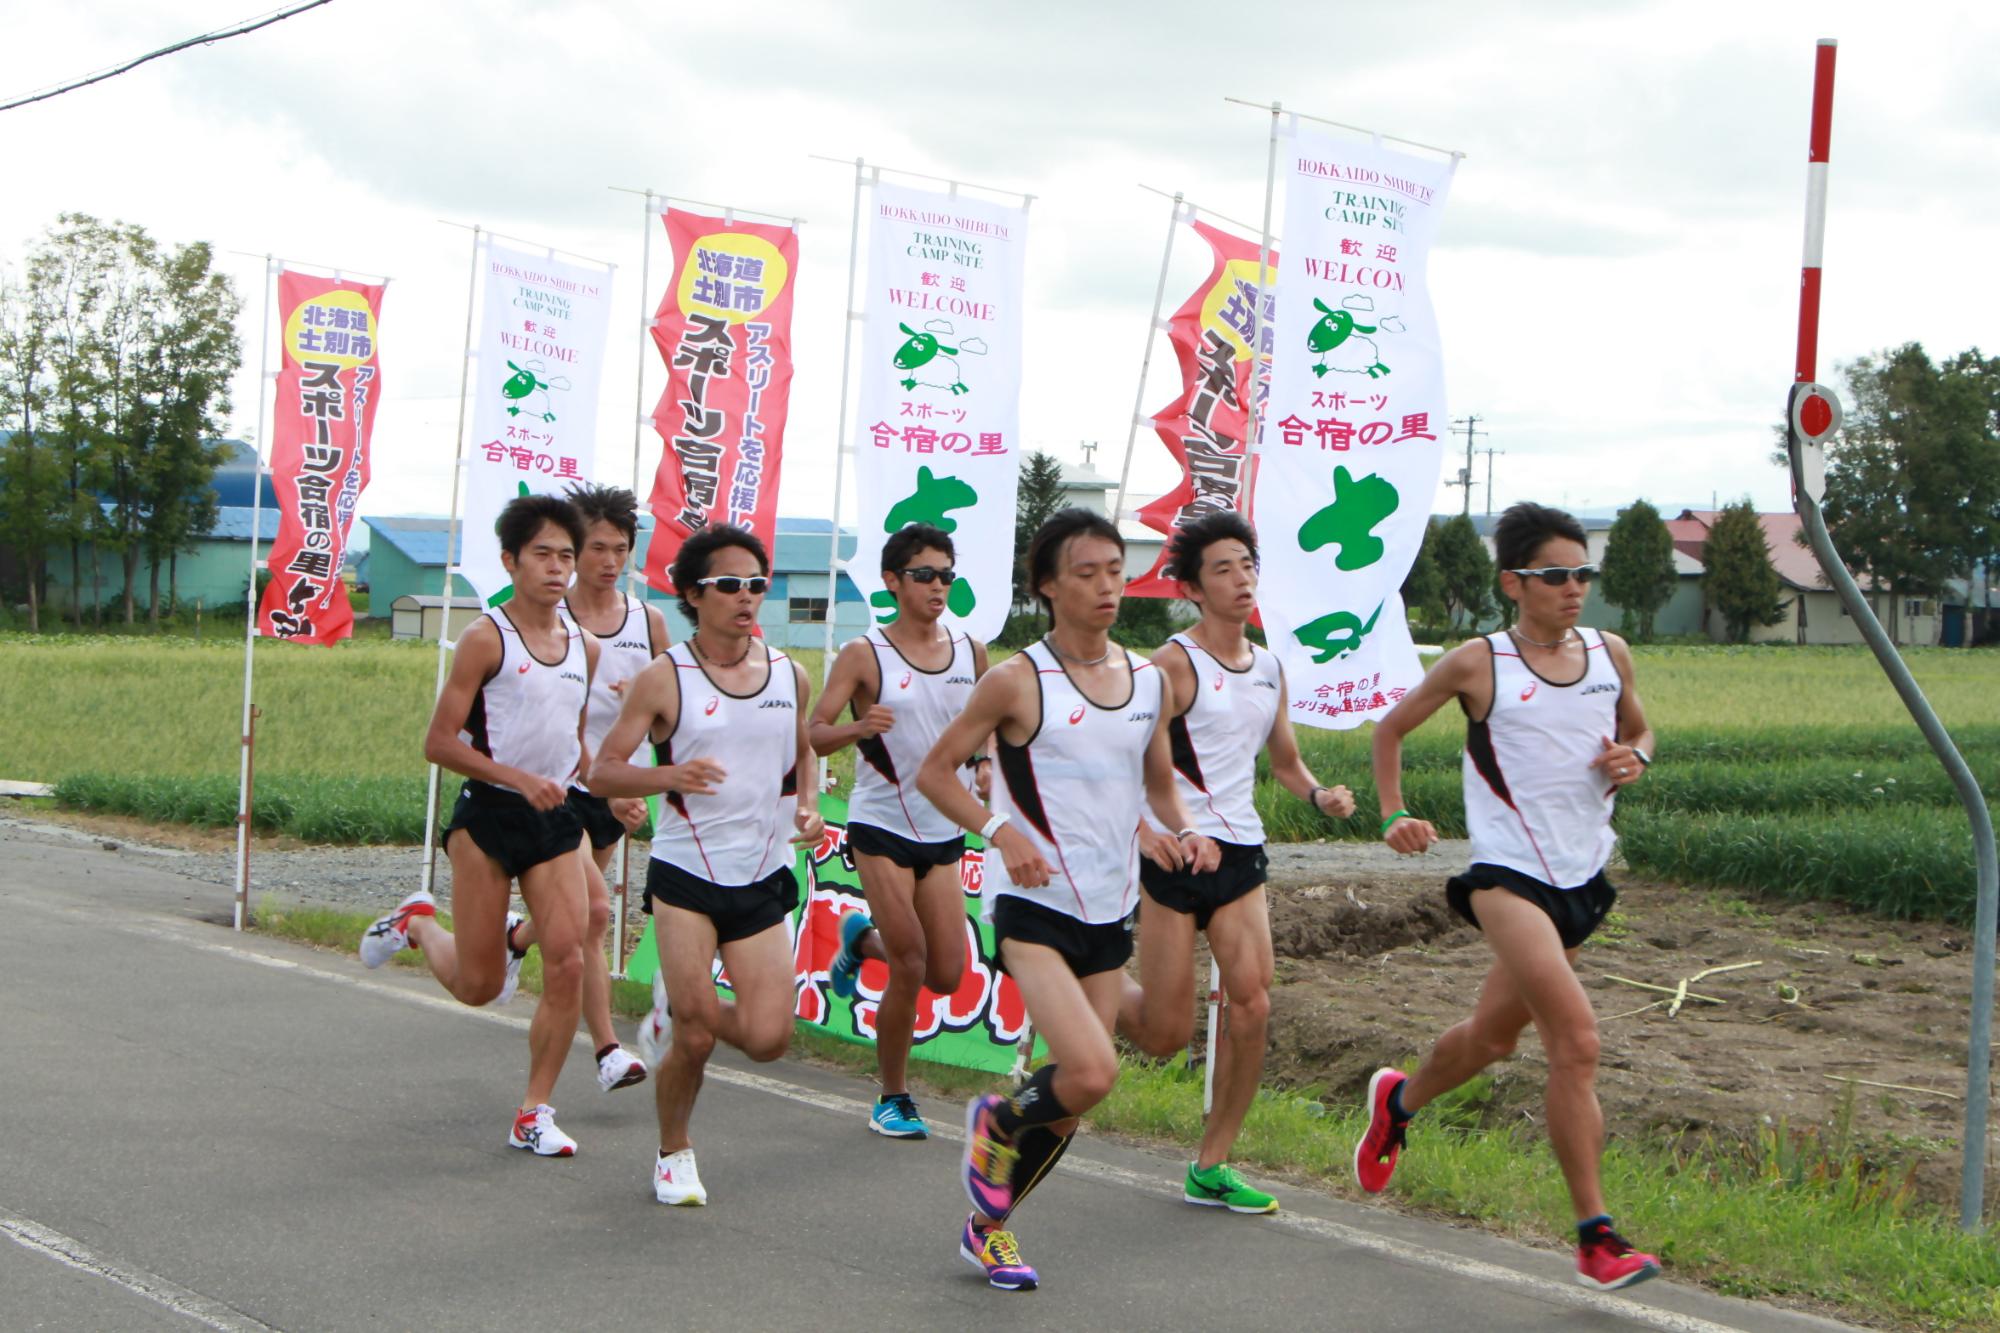 《2015年》日本陸上競技連盟男子マラソンナショナルチーム合宿に参加した選手たち